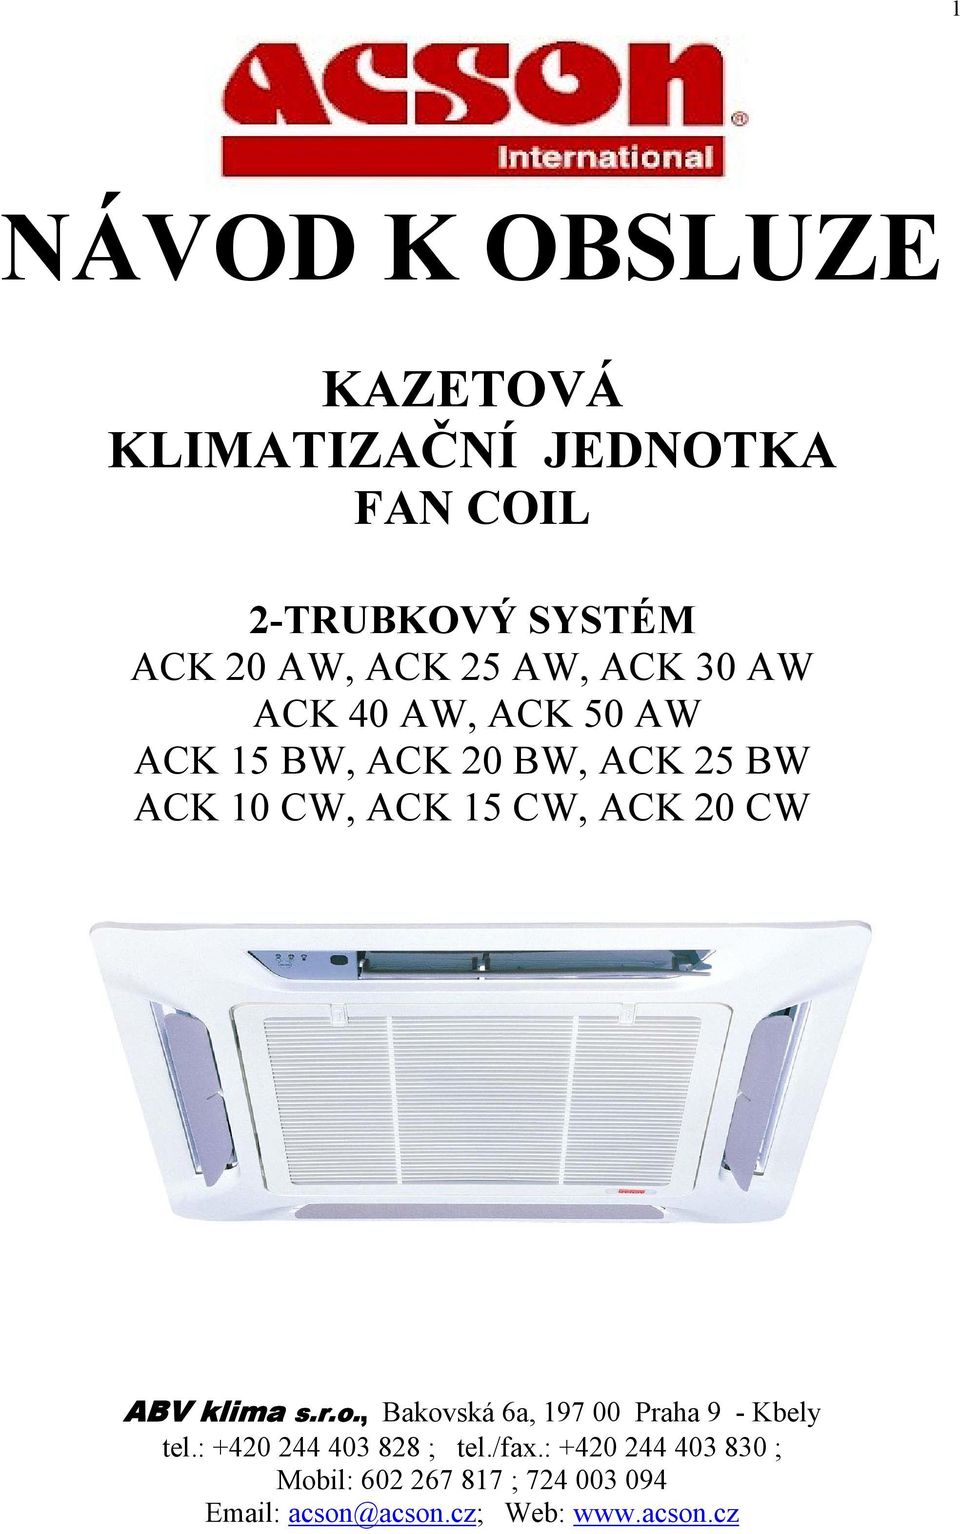 20 CW ABV klima s.r.o., Bakovská 6a, 197 00 Praha 9 - Kbely tel.: +420 244 403 828 ; tel./fax.